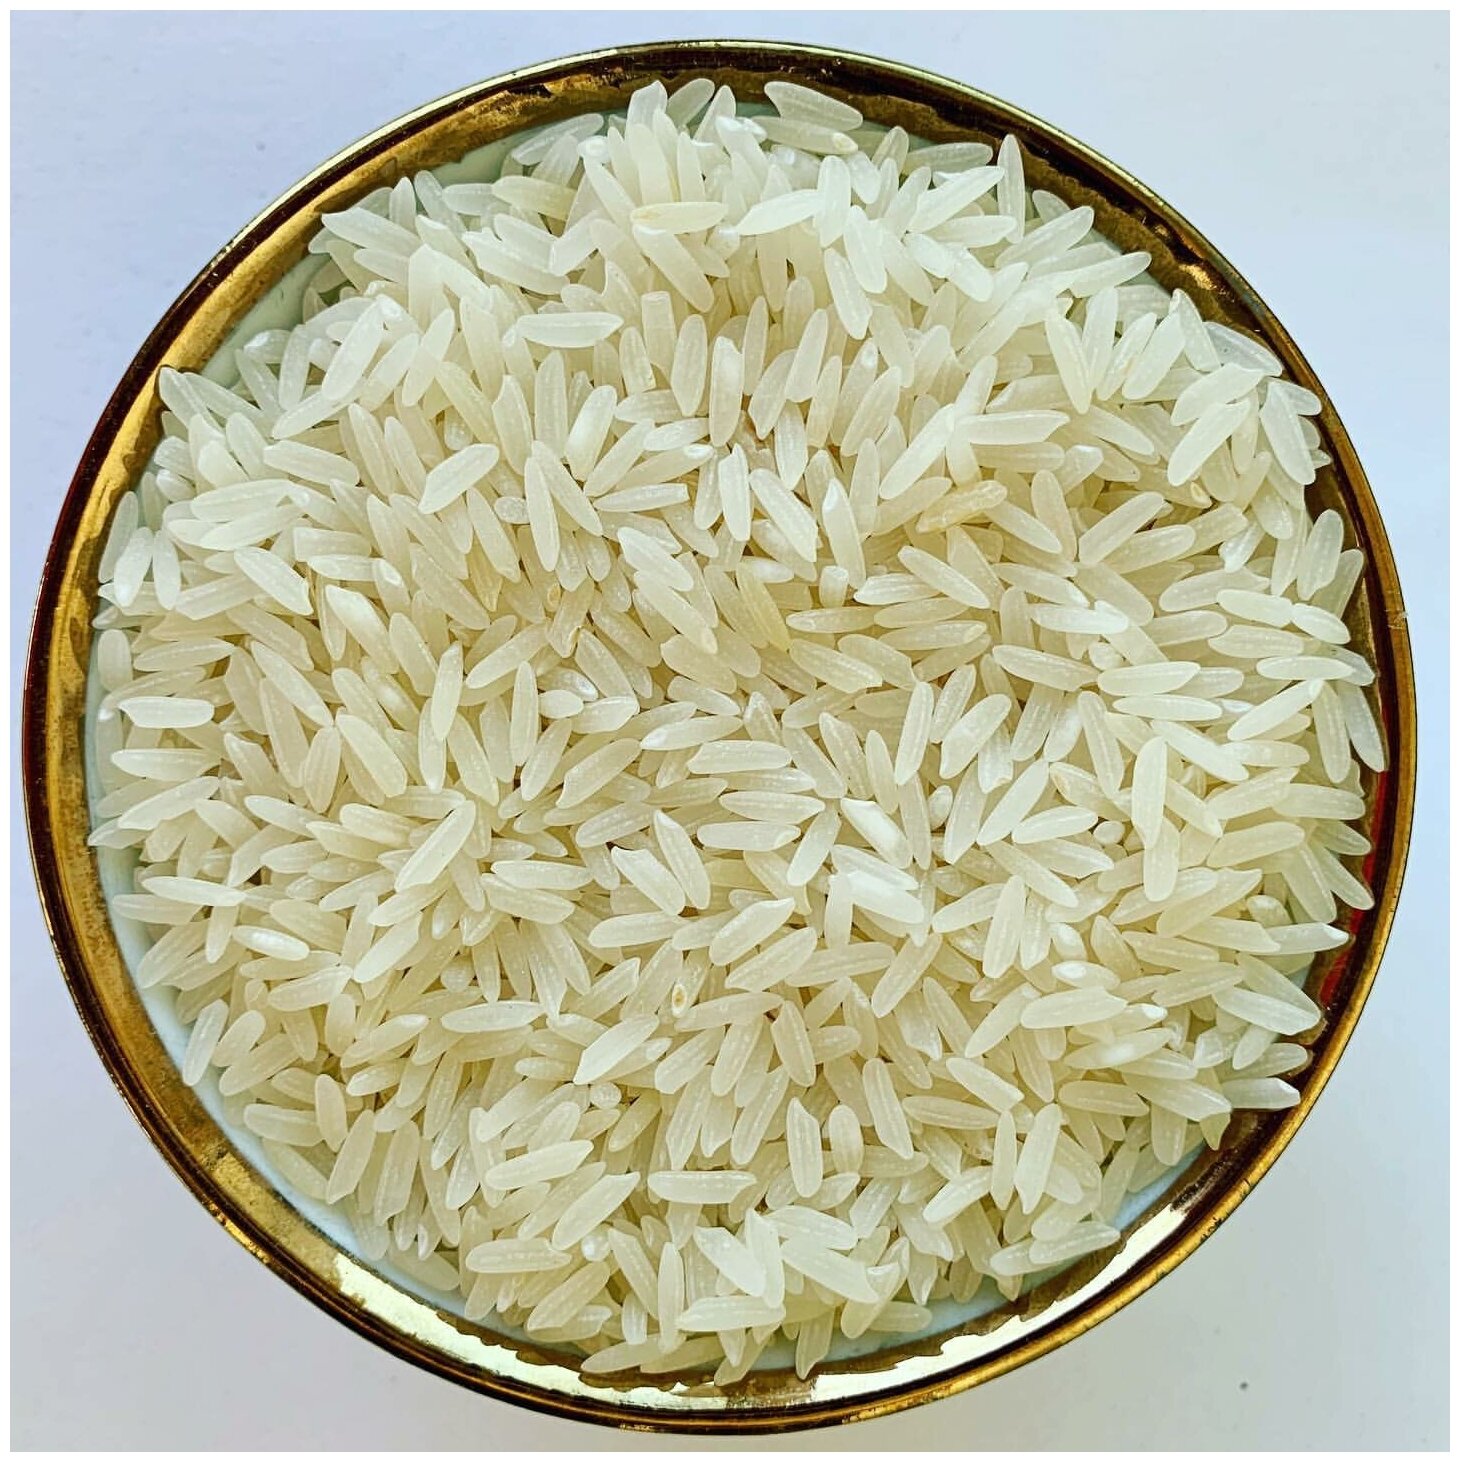 Рис для плова Хорезмский лазер 3 кг импорт Узбекистан